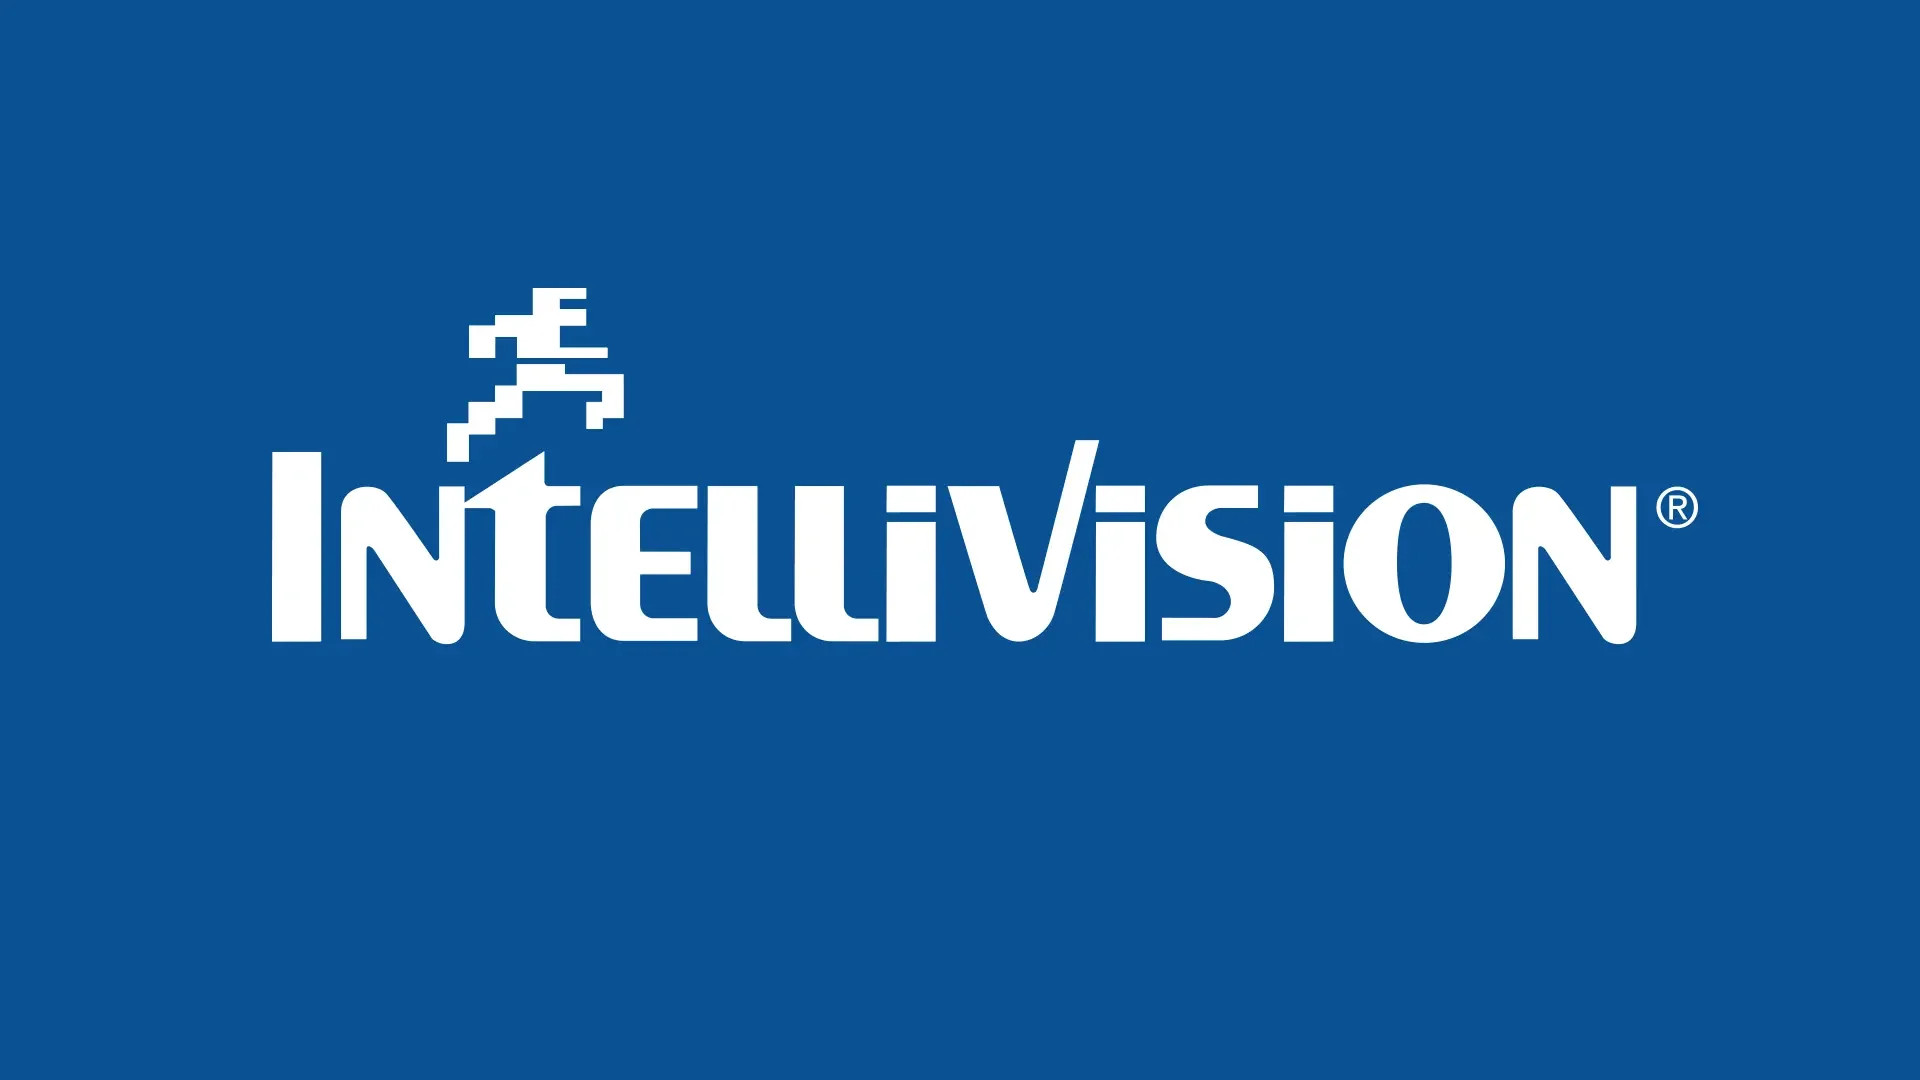 Atari compra Intellivision